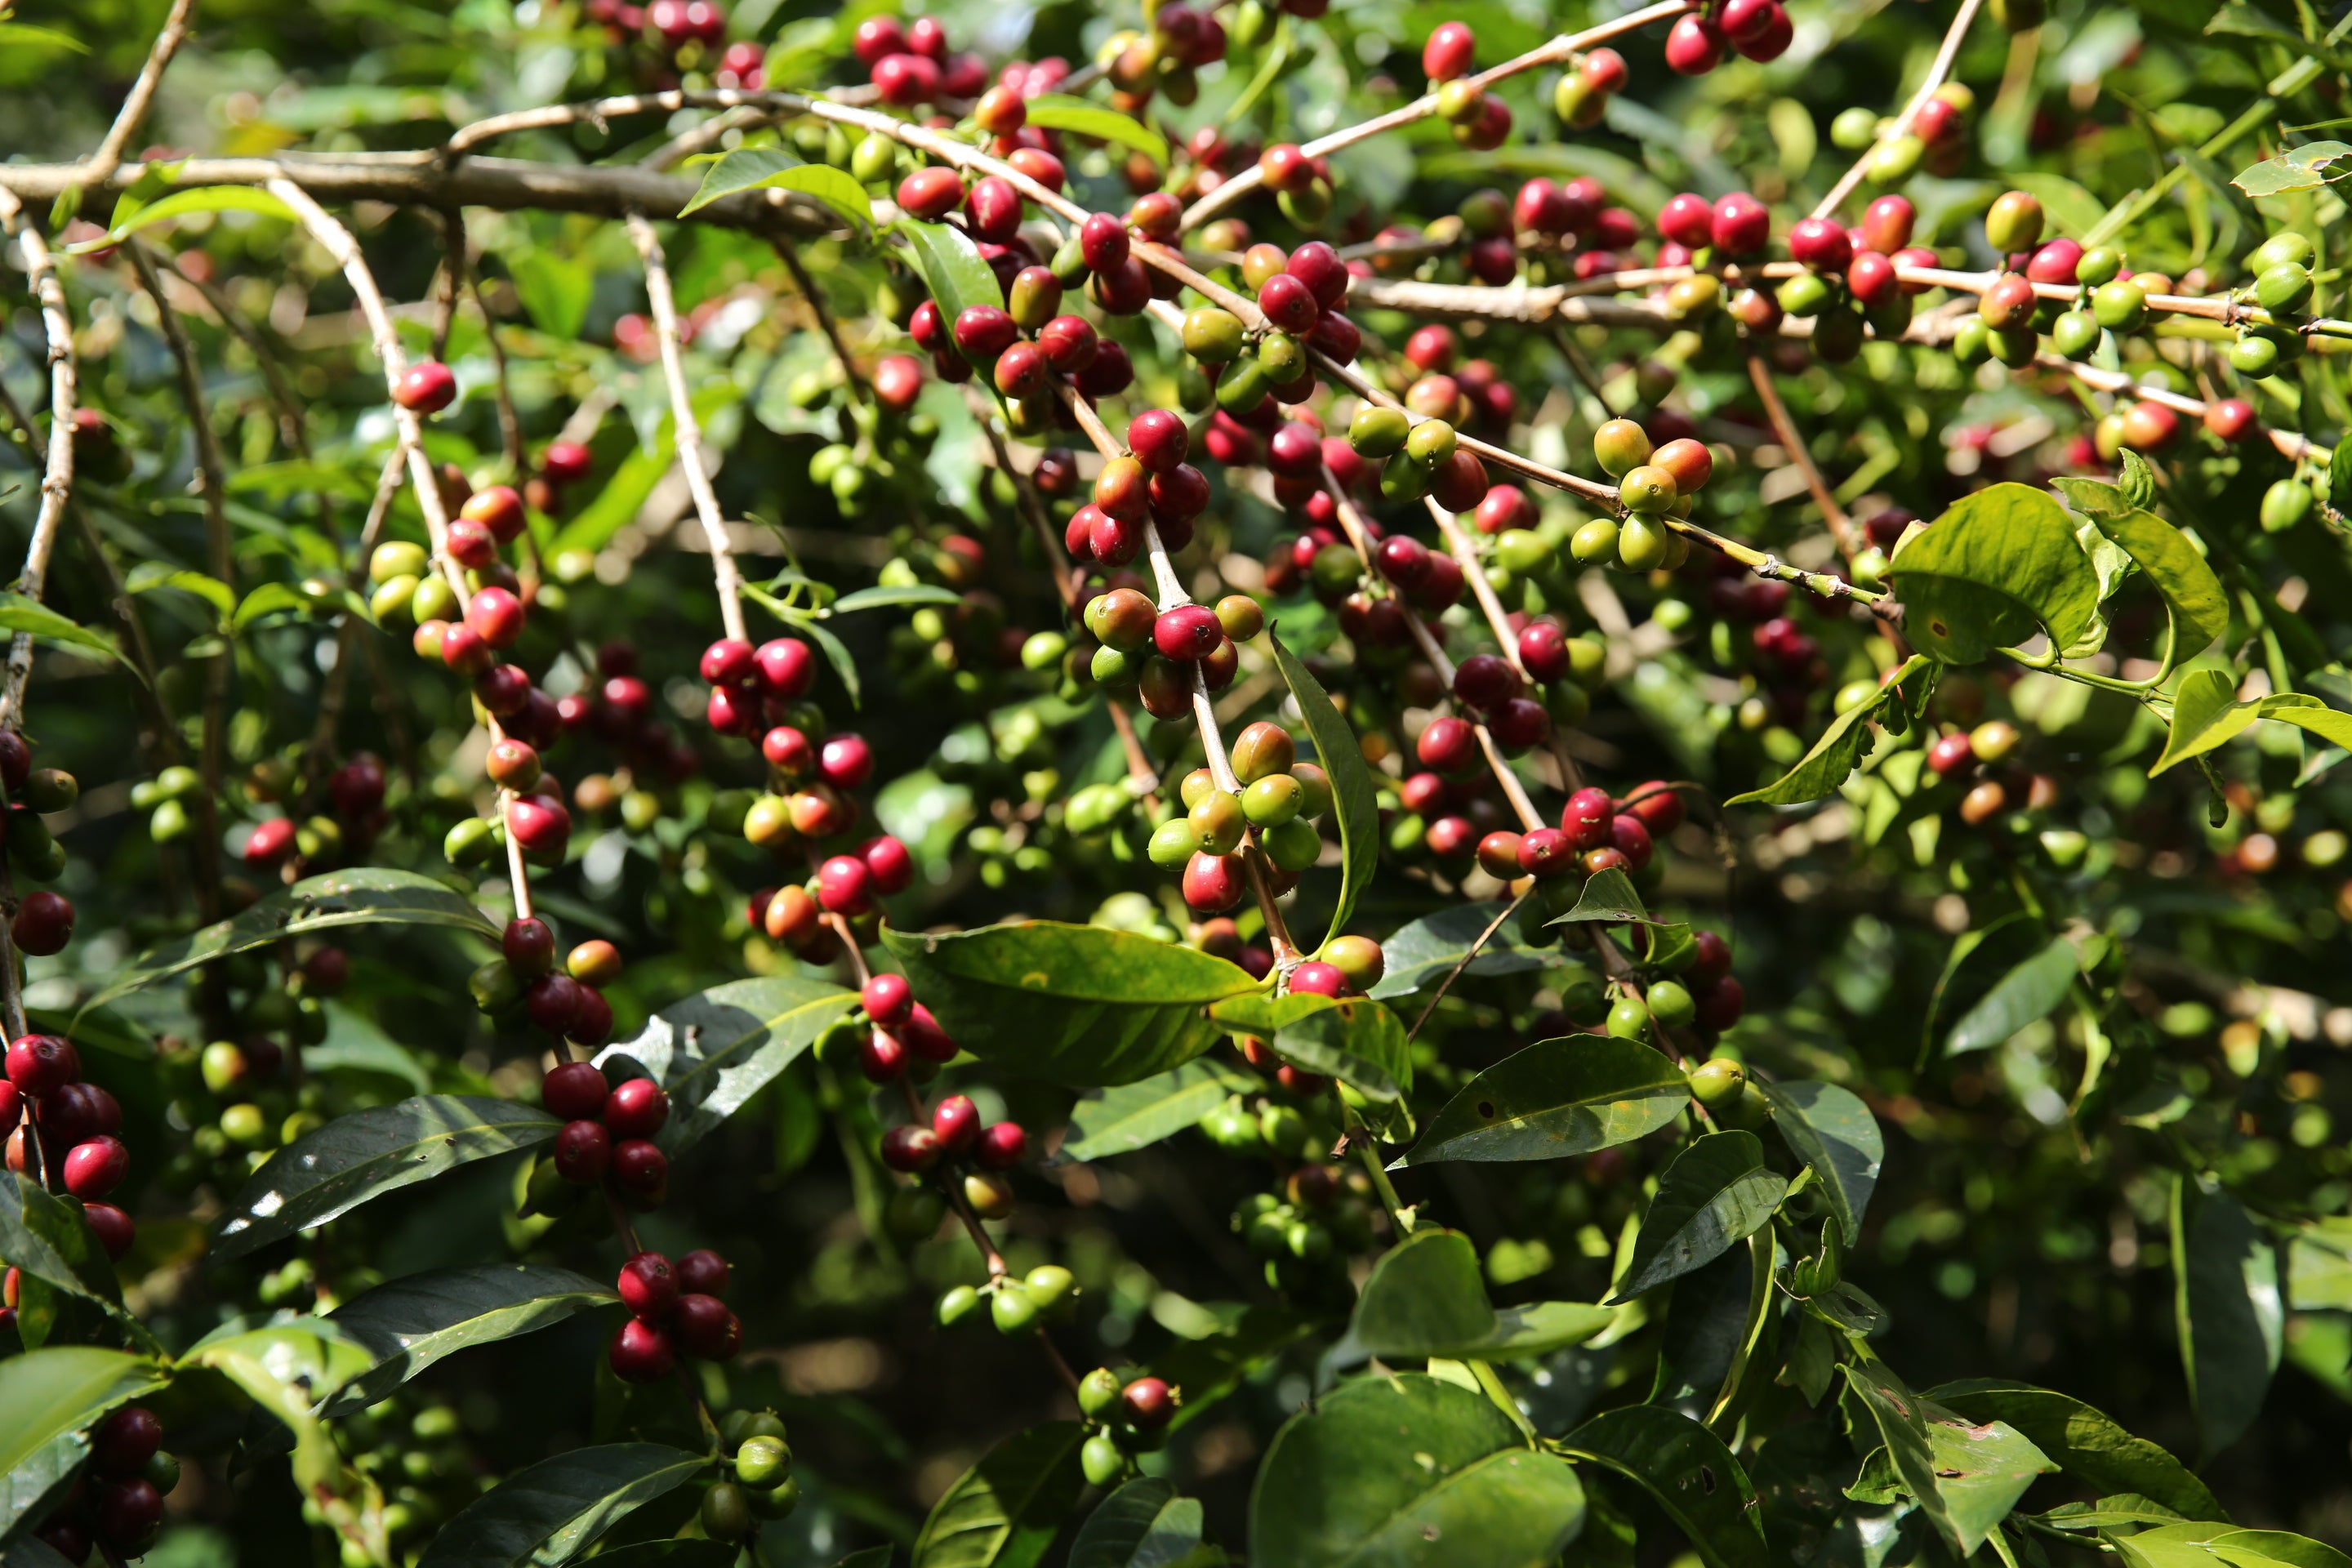 Coffee trees in Guji Ethiopia